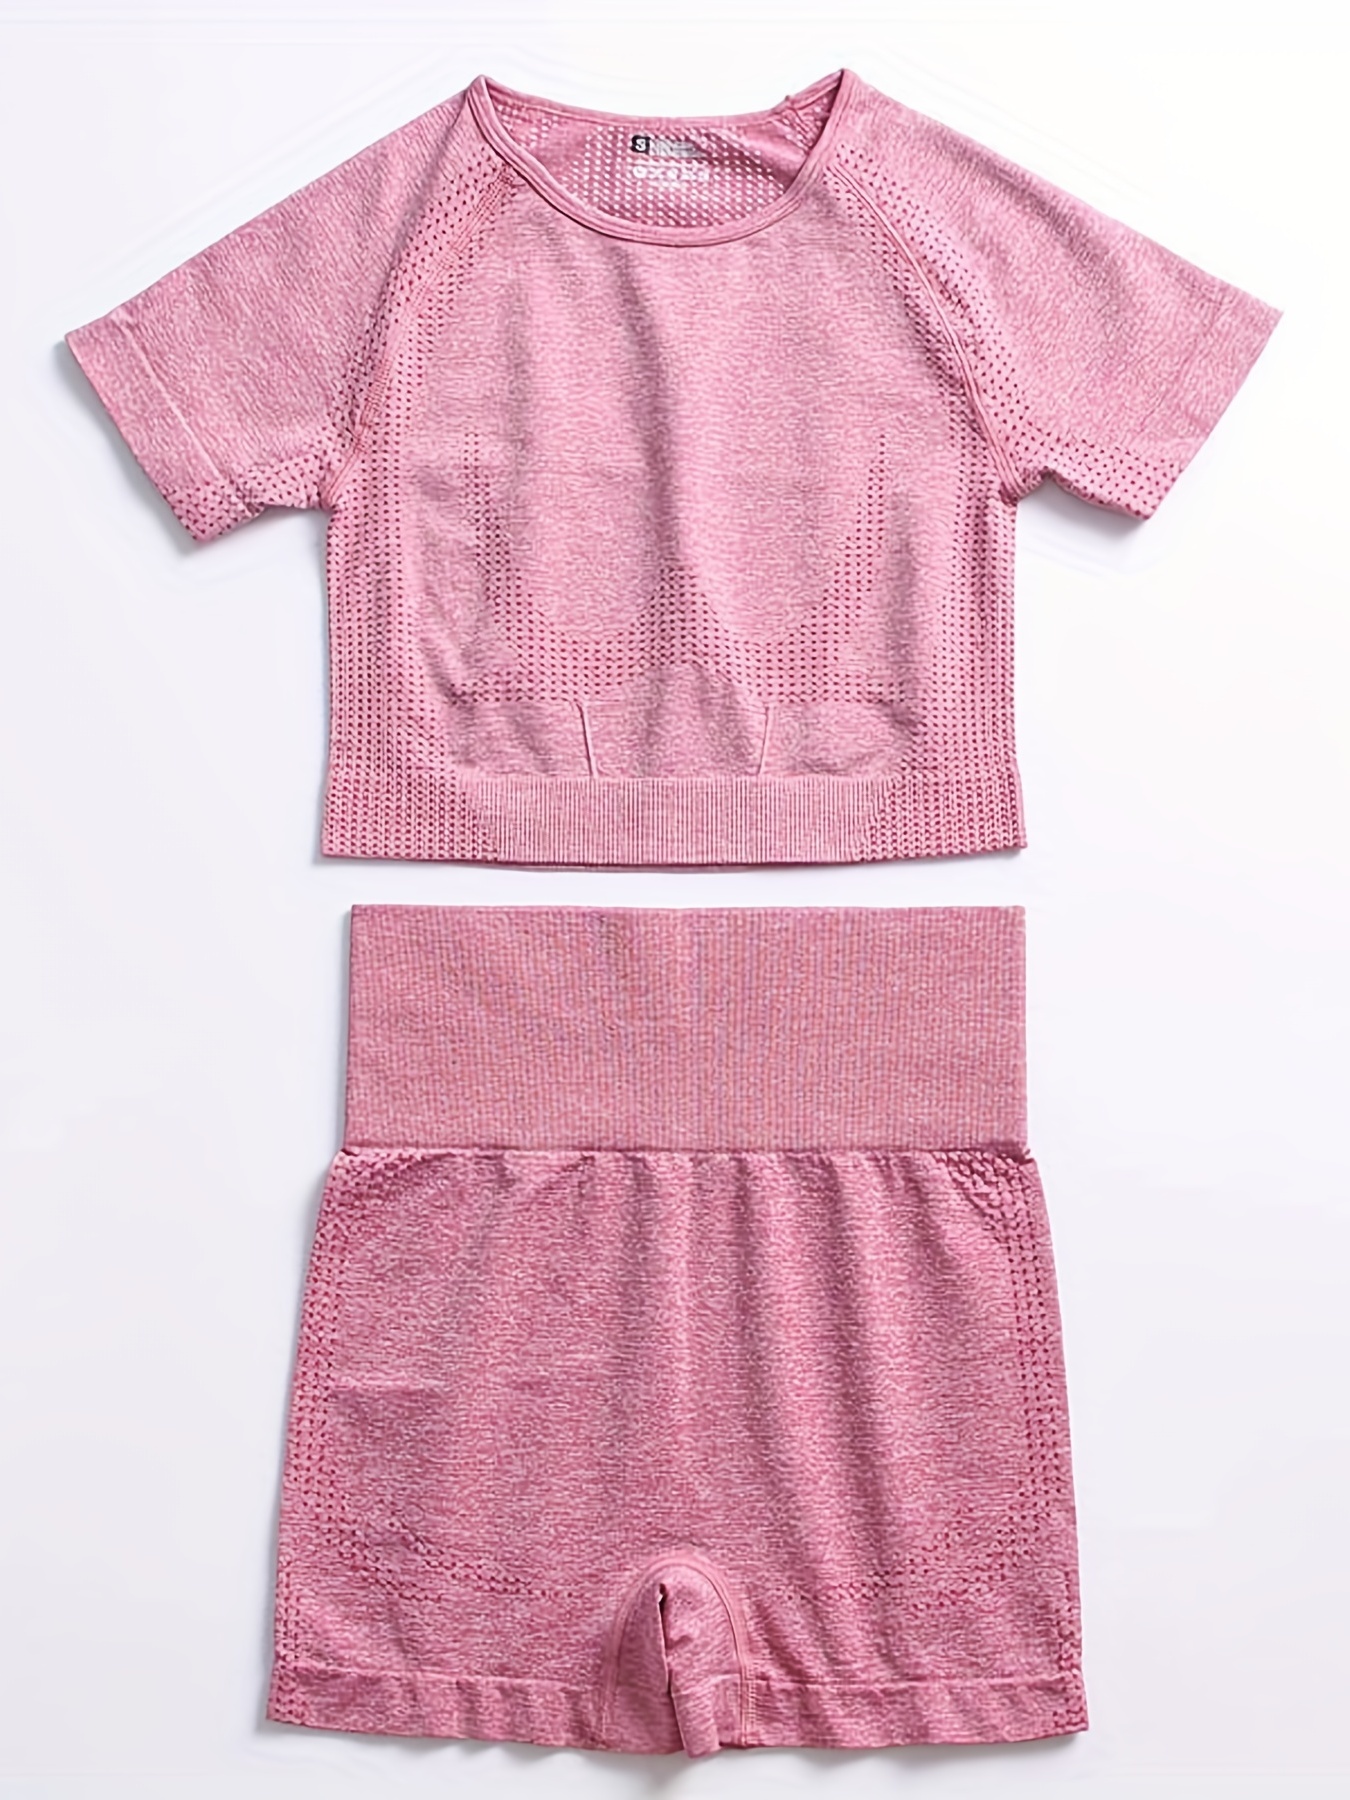 Conjunto de ropa deportiva para mujer Conjunto de pantalones cortos con top  de yoga Camiseta deportiva de manga corta, rosa roja, L kenally AP002243-07